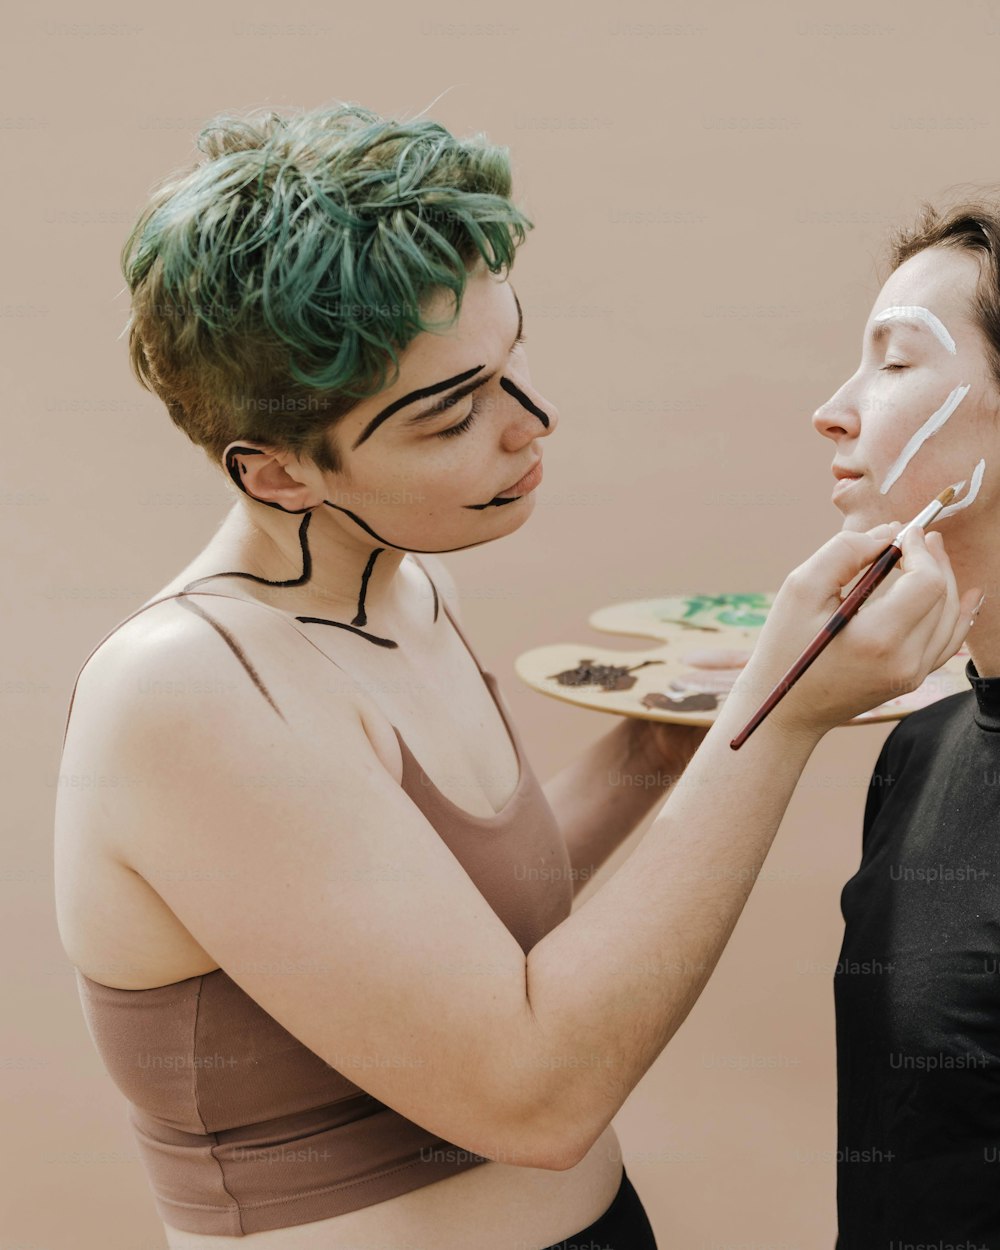 Una mujer con cabello verde está pintando la cara de otra mujer